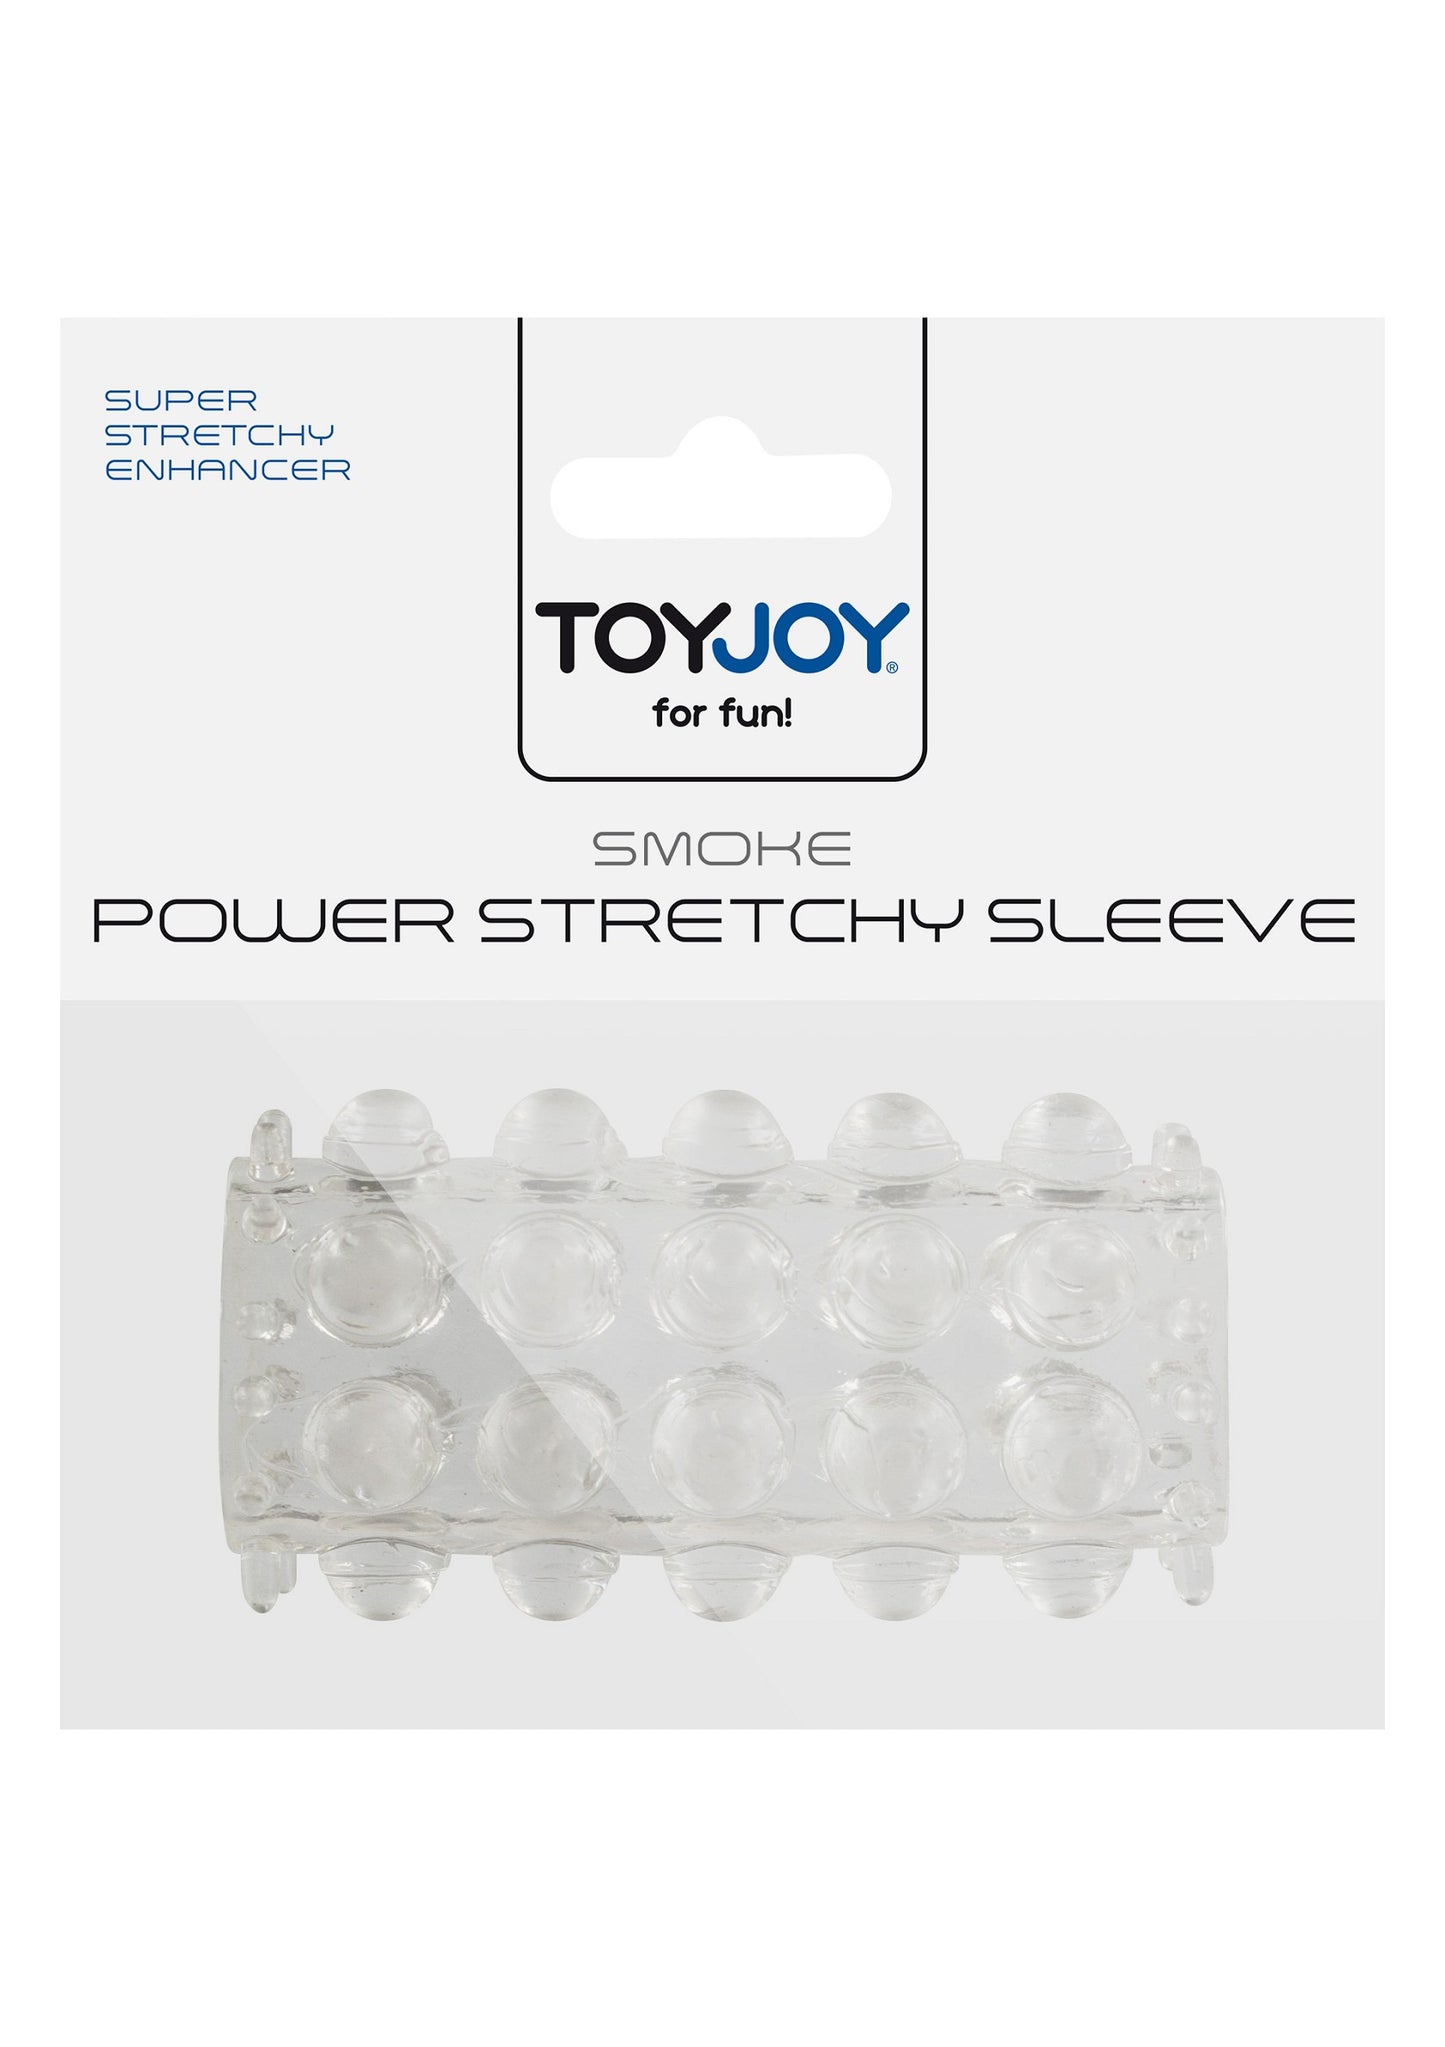 ToyJoy Manpower Power Stretchy Sleeve TRANSPA - 1